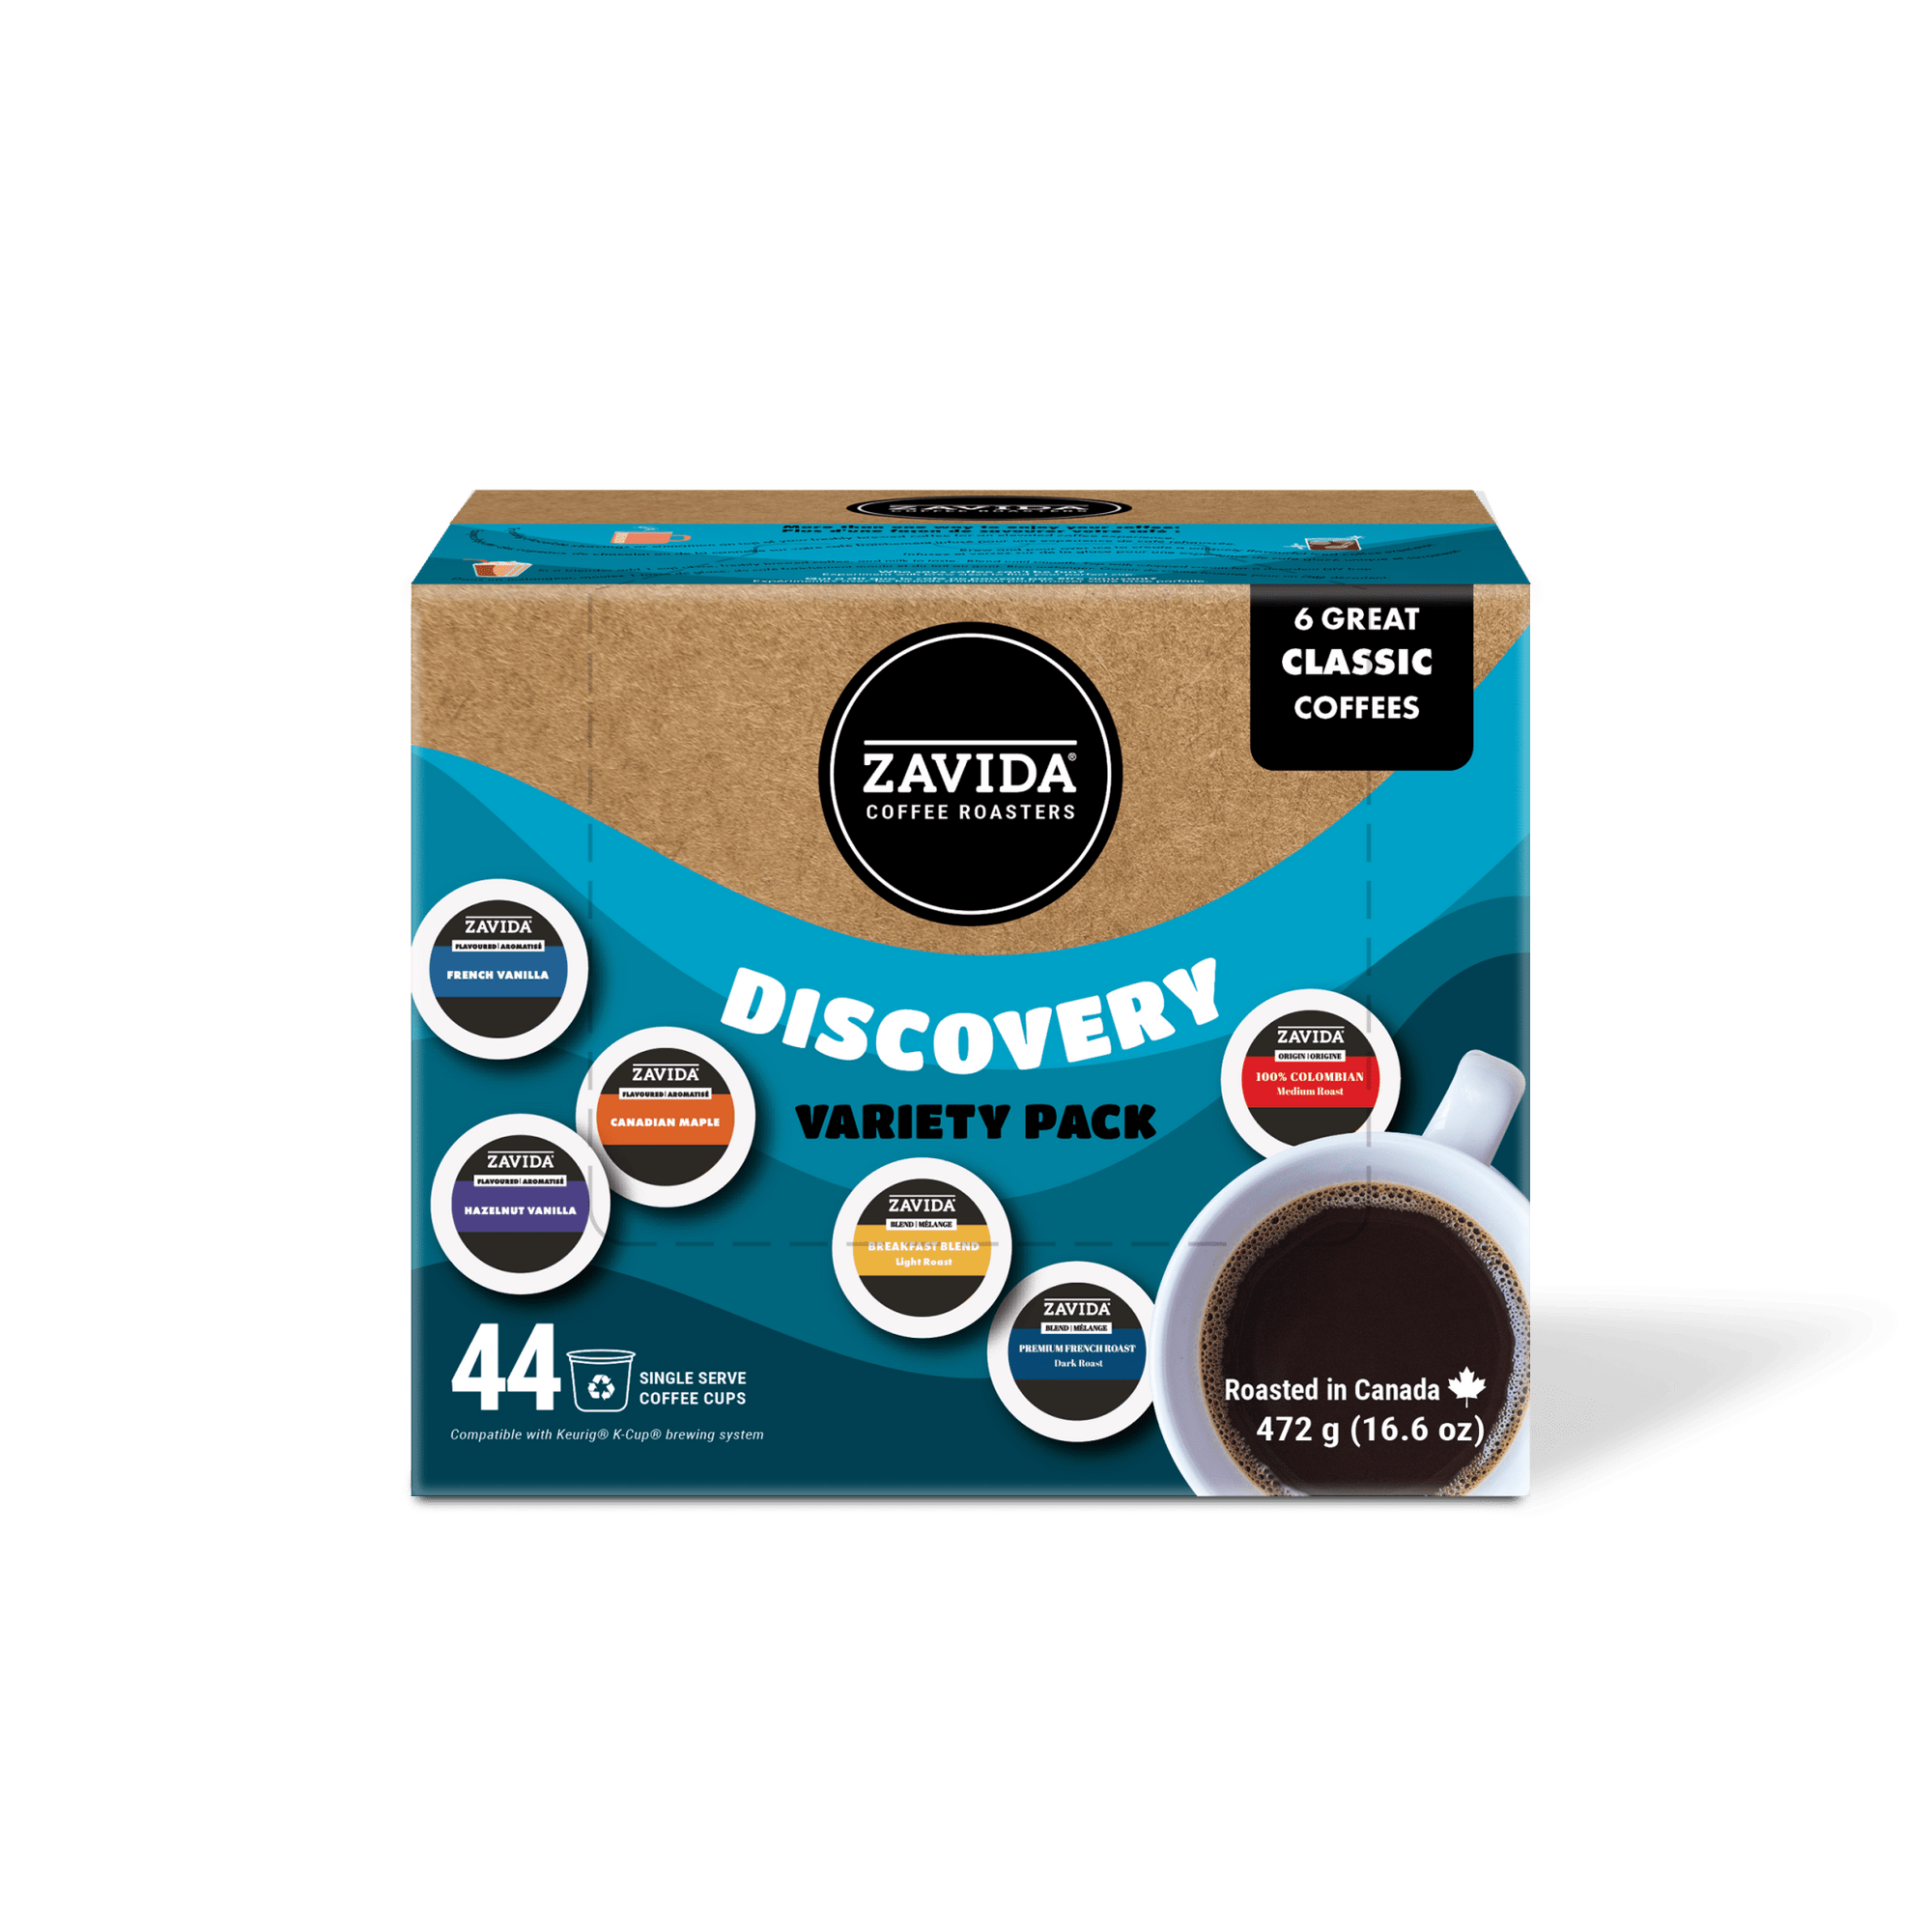 Discovery Variety Pack (44 pods) - Zavida Coffee